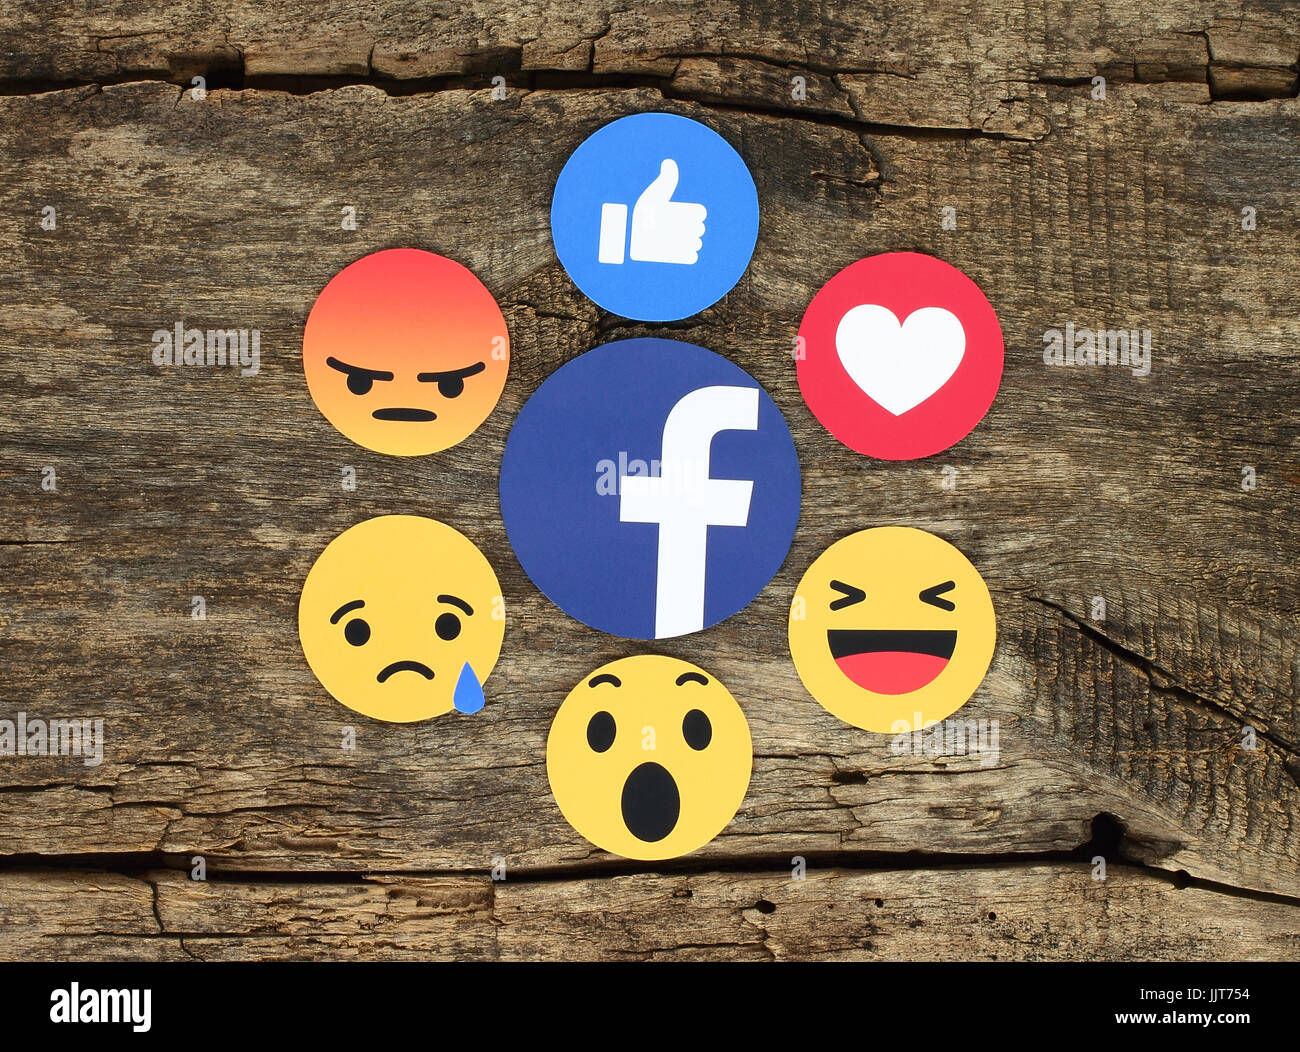 Kiev, Ukraine - 07 Février 2017 : Facebook like button 6 Réactions Emoji empathique imprimée sur du papier et placés sur fond de bois. Facebook est un w Banque D'Images